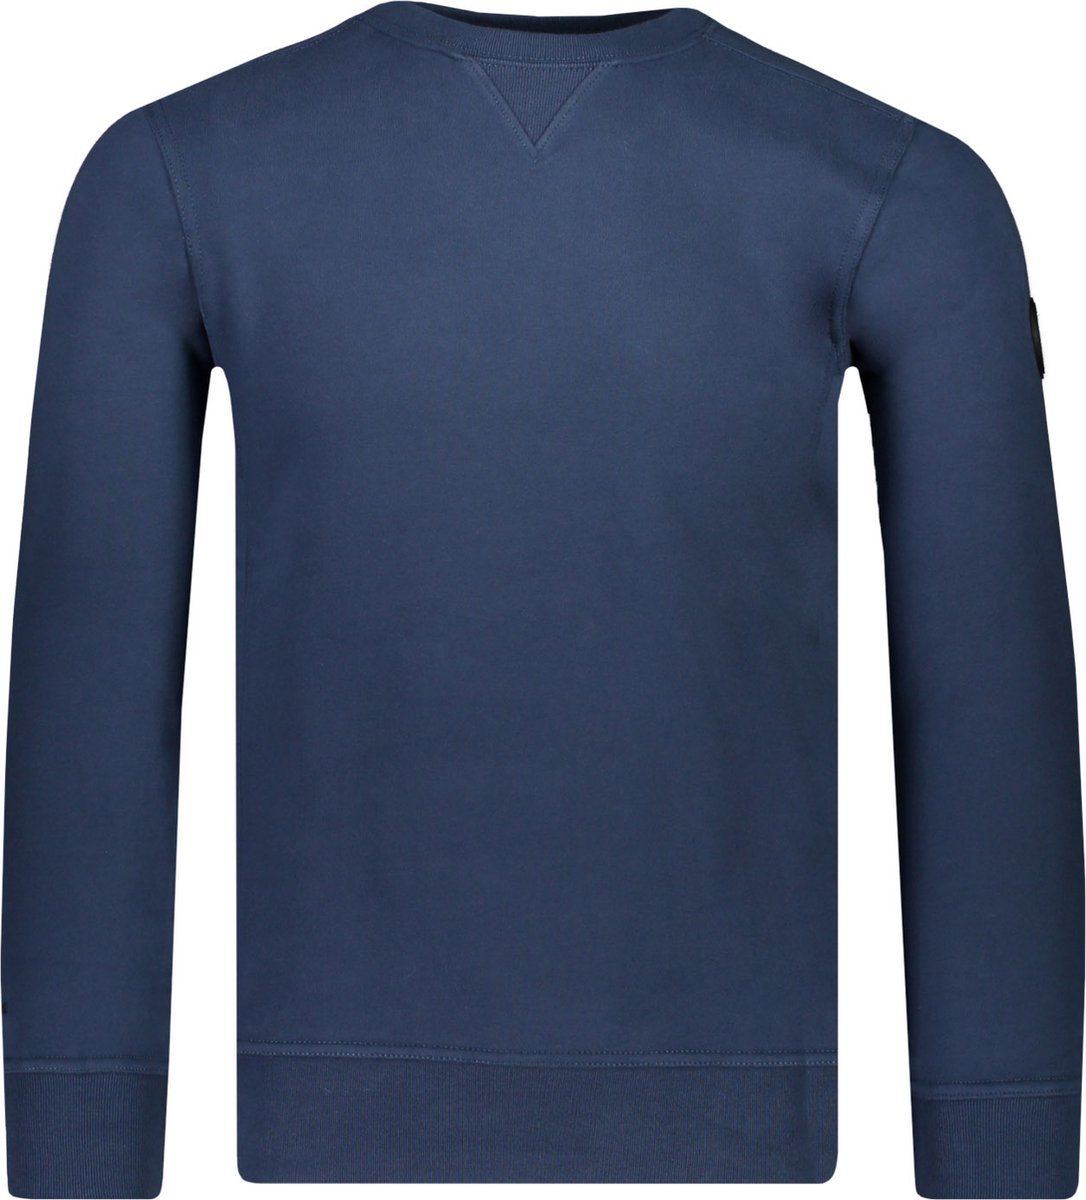 Airforce Sweater Blauw Normaal - Maat L - Mannen - Herfst/Winter Collectie - Katoen